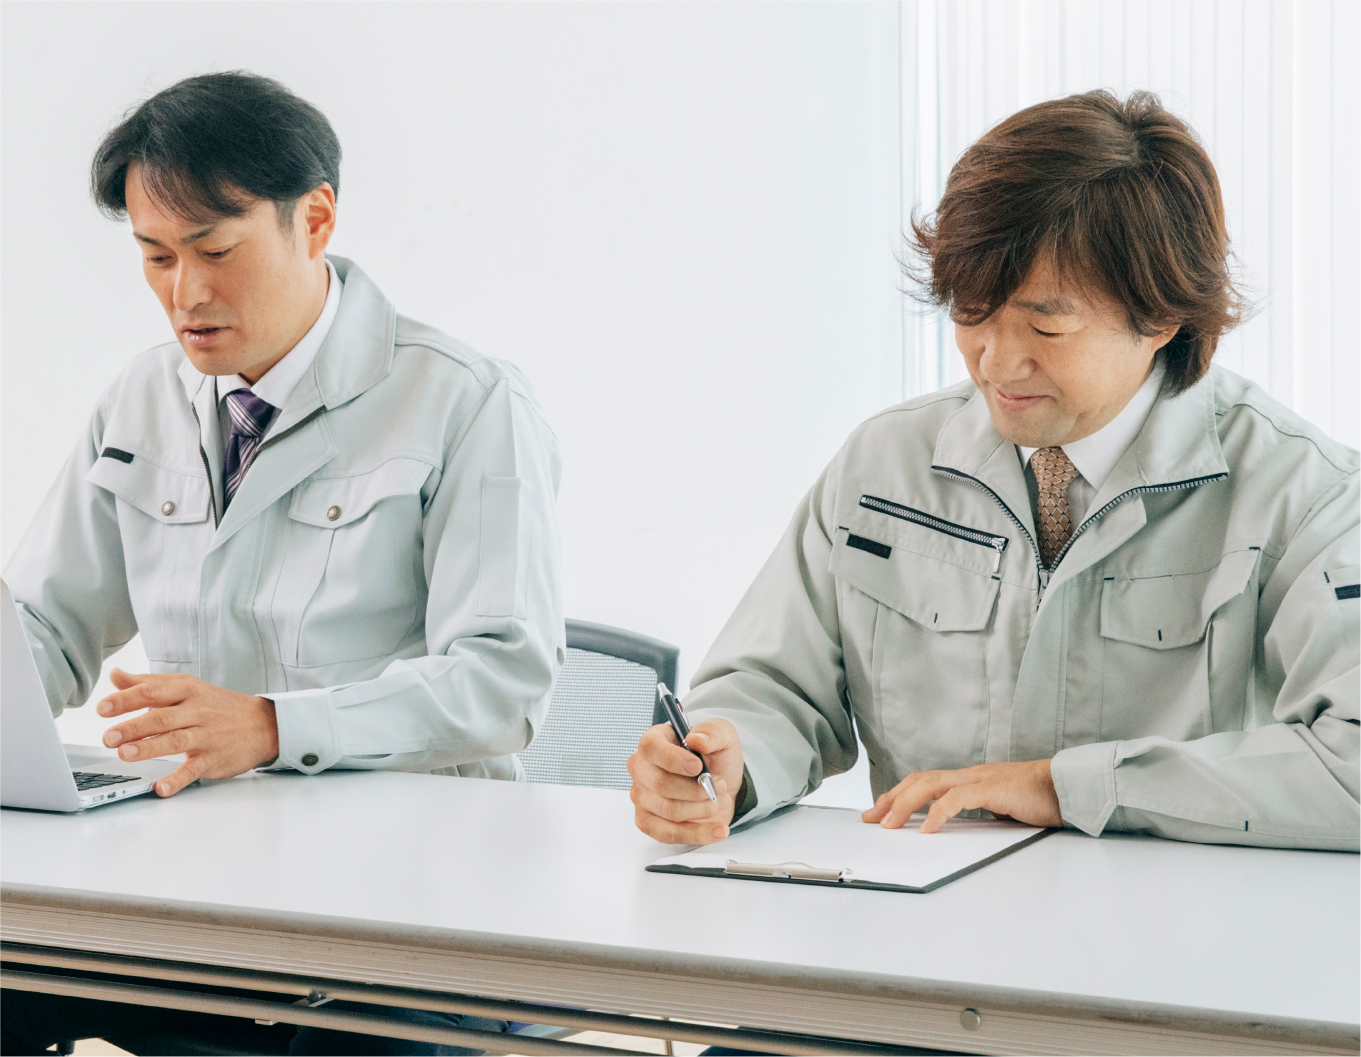 ISOの認証機関のなかでも日本国内トップクラスのシェアを誇るJQA（一般財団法人日本品質保証機構）のパートナー企業である旭化成アミダスは、20年以上、審査業務を受託してきました。実績豊富な審査員が、高度な知見をもとにISO審査を実施しています。